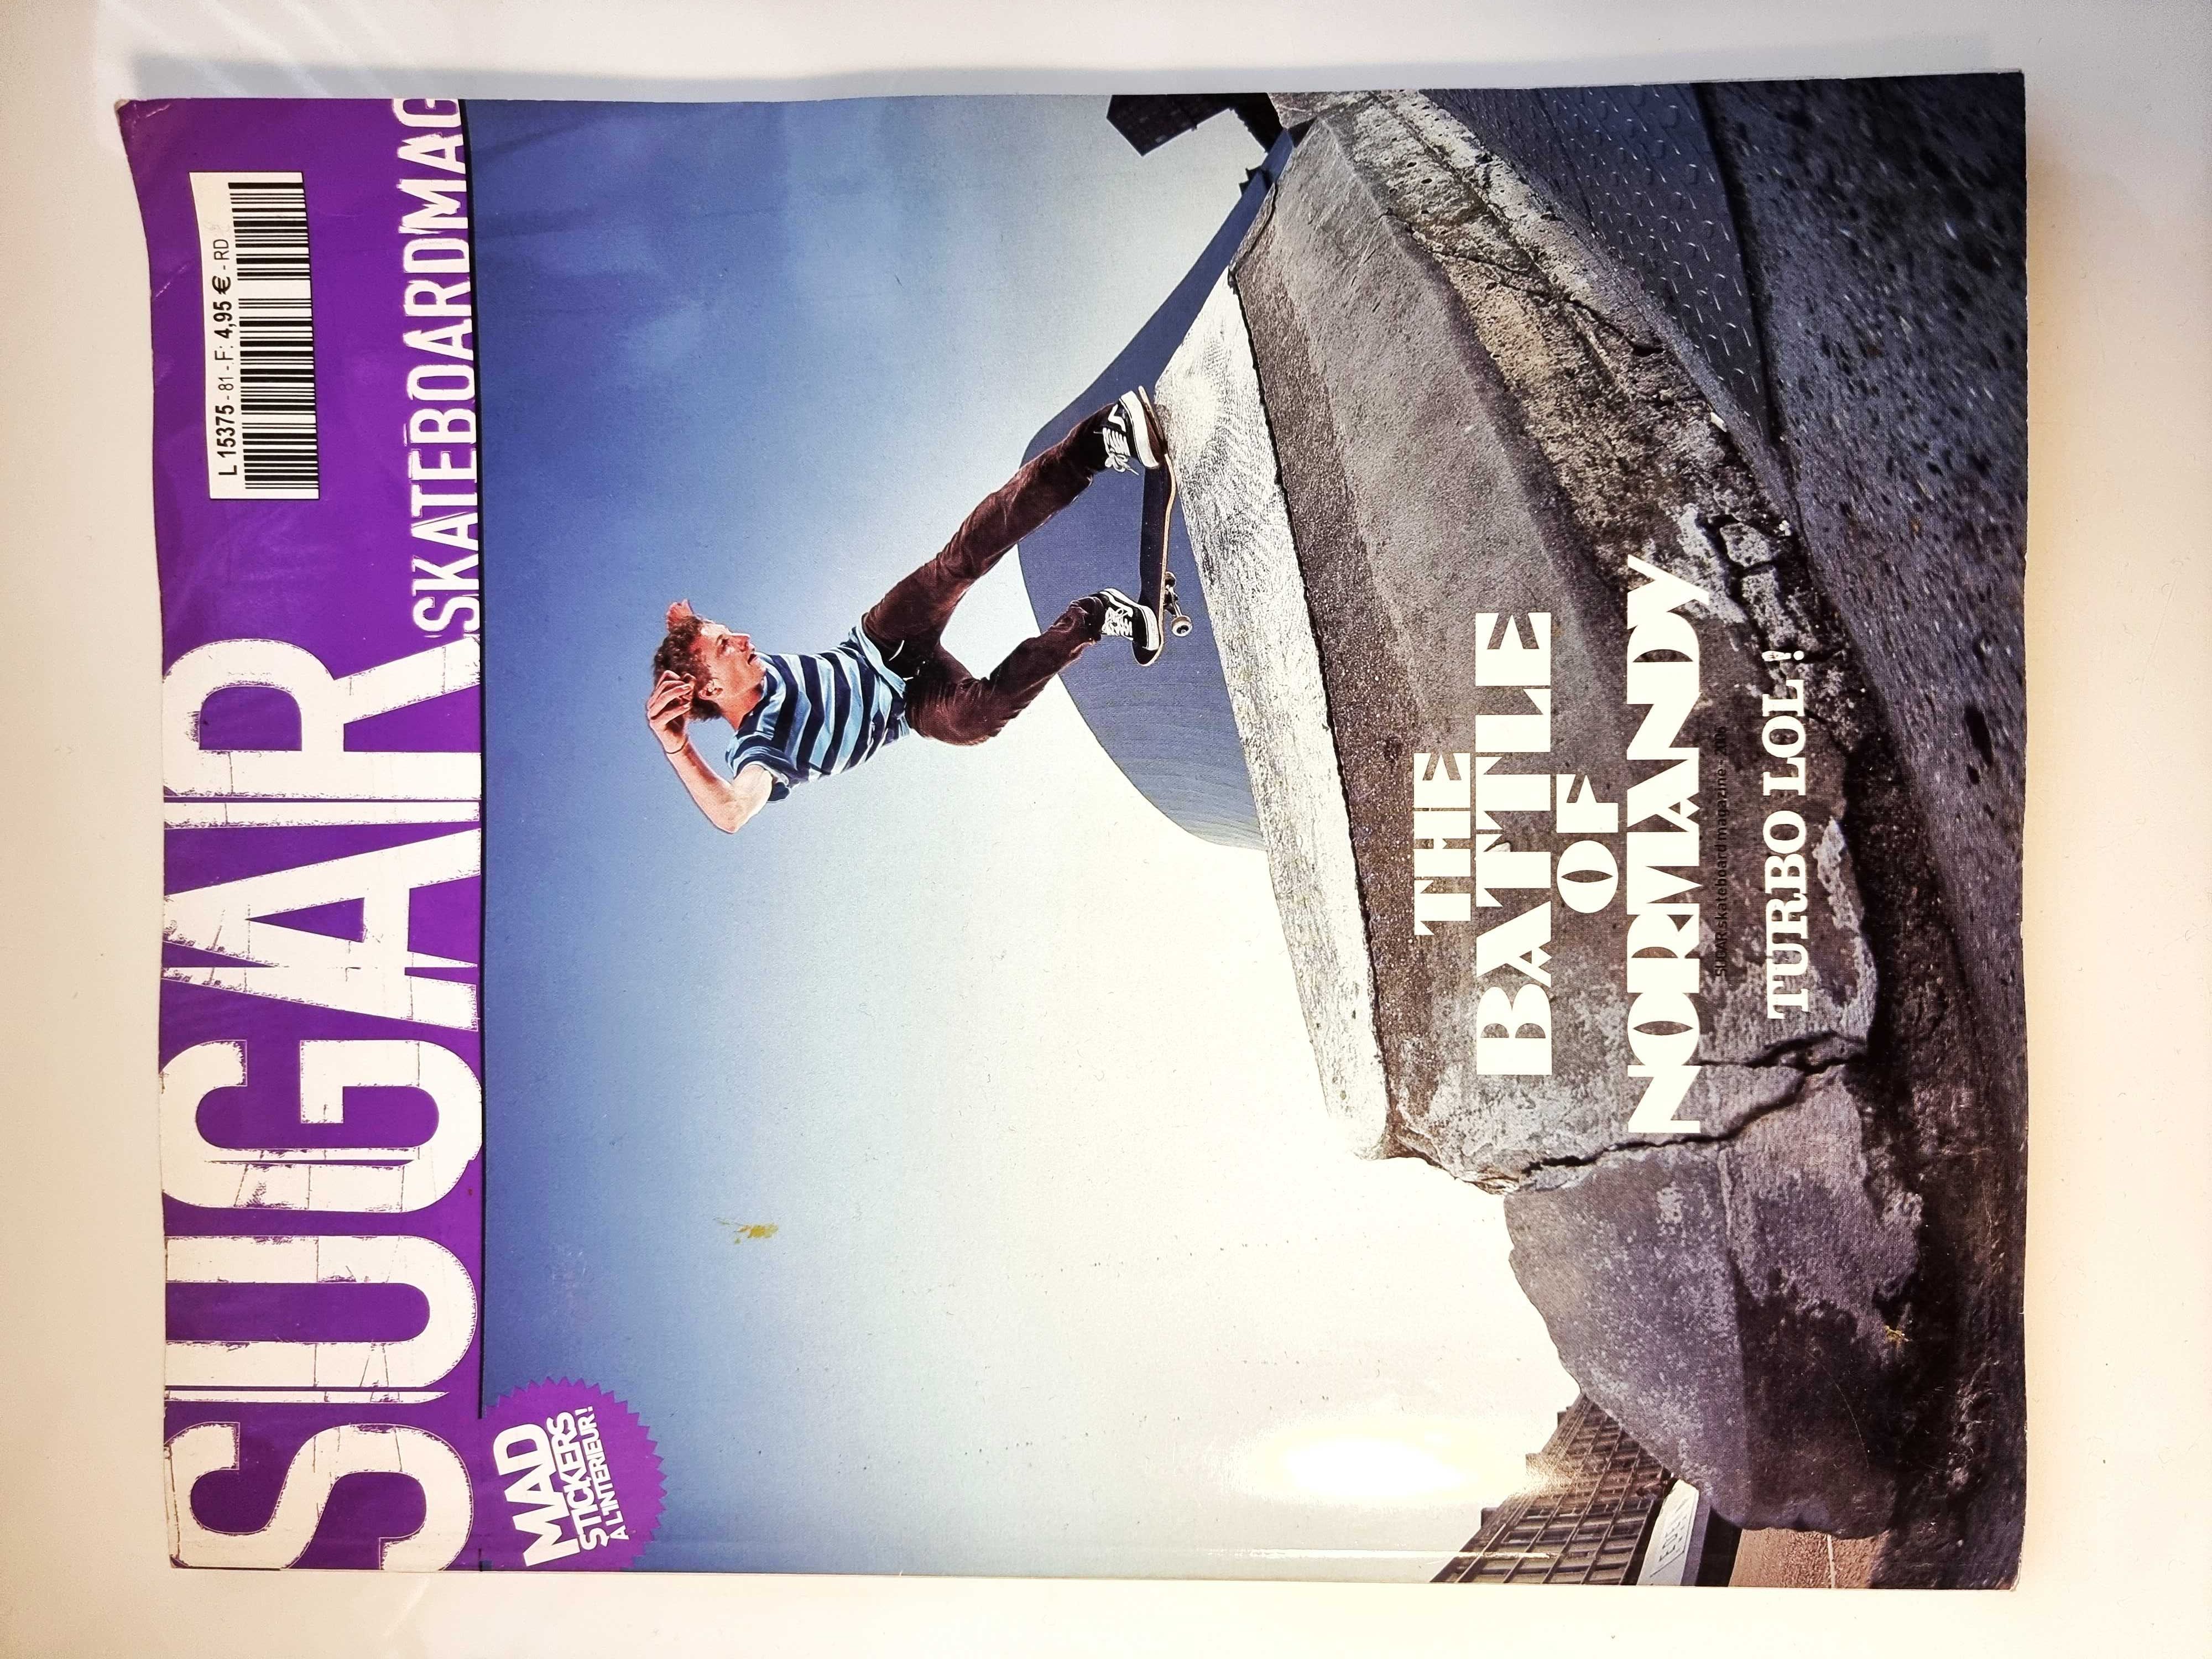 Revista Sugar SkateboardMAG francesa original Octobre 2006.